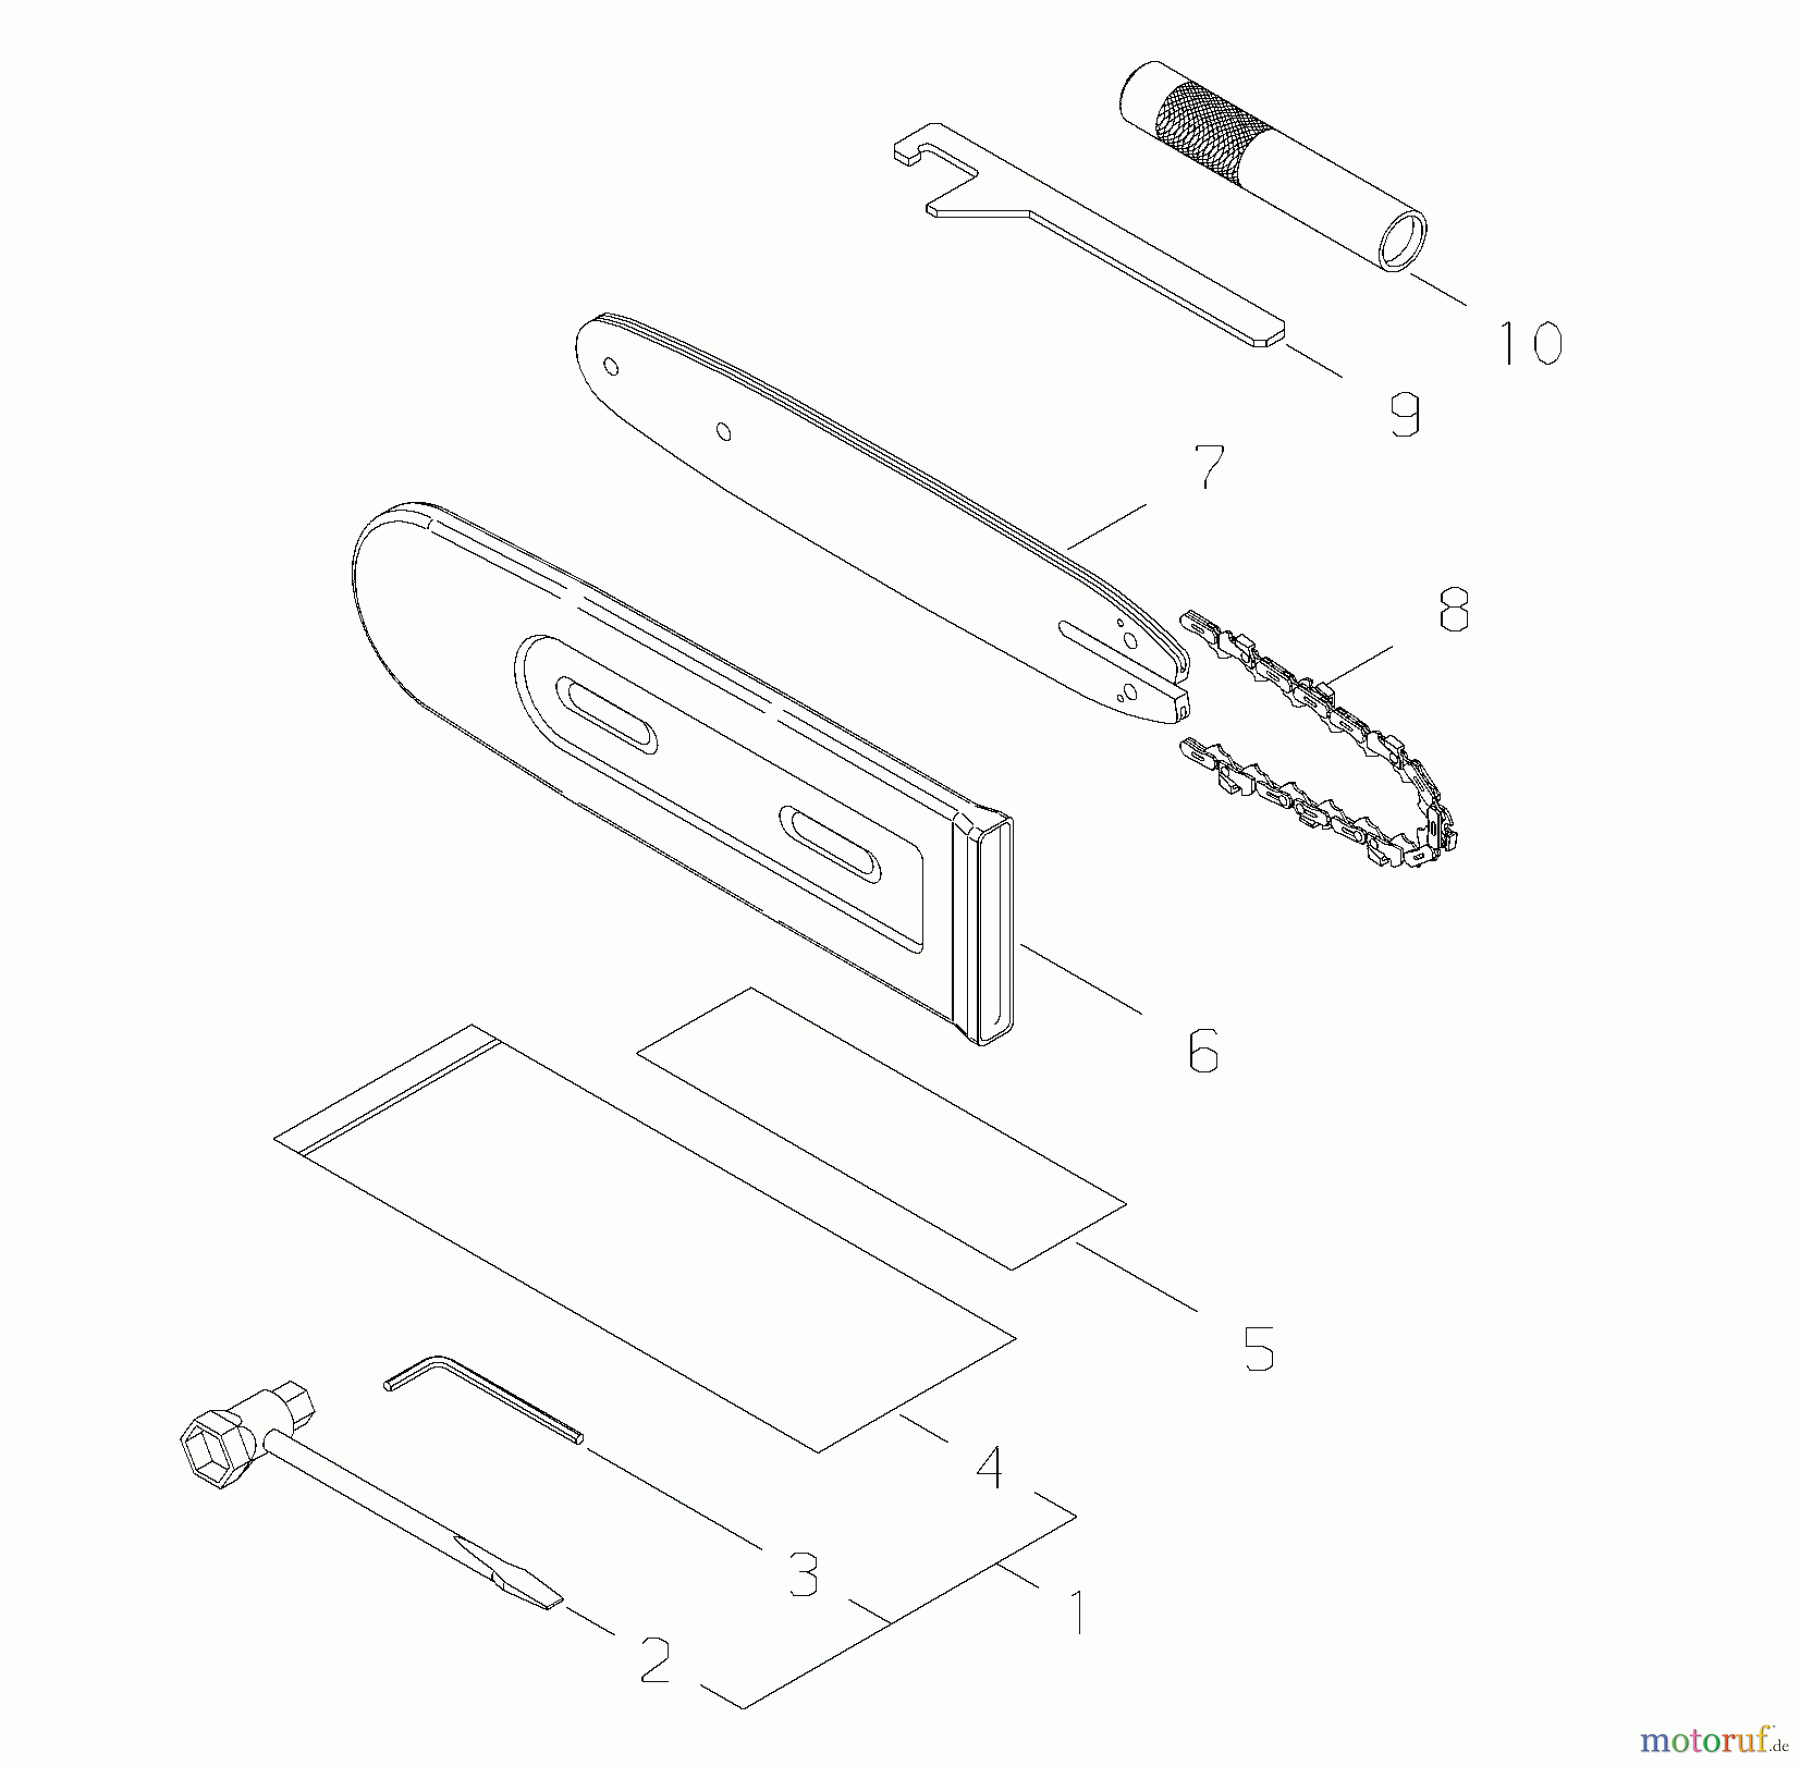  Shindaiwa Trimmer, Faden / Bürste 78702 - Shindaiwa Pole Saw / Pruner Attachment Tool Kit / Guide Bar / Chain